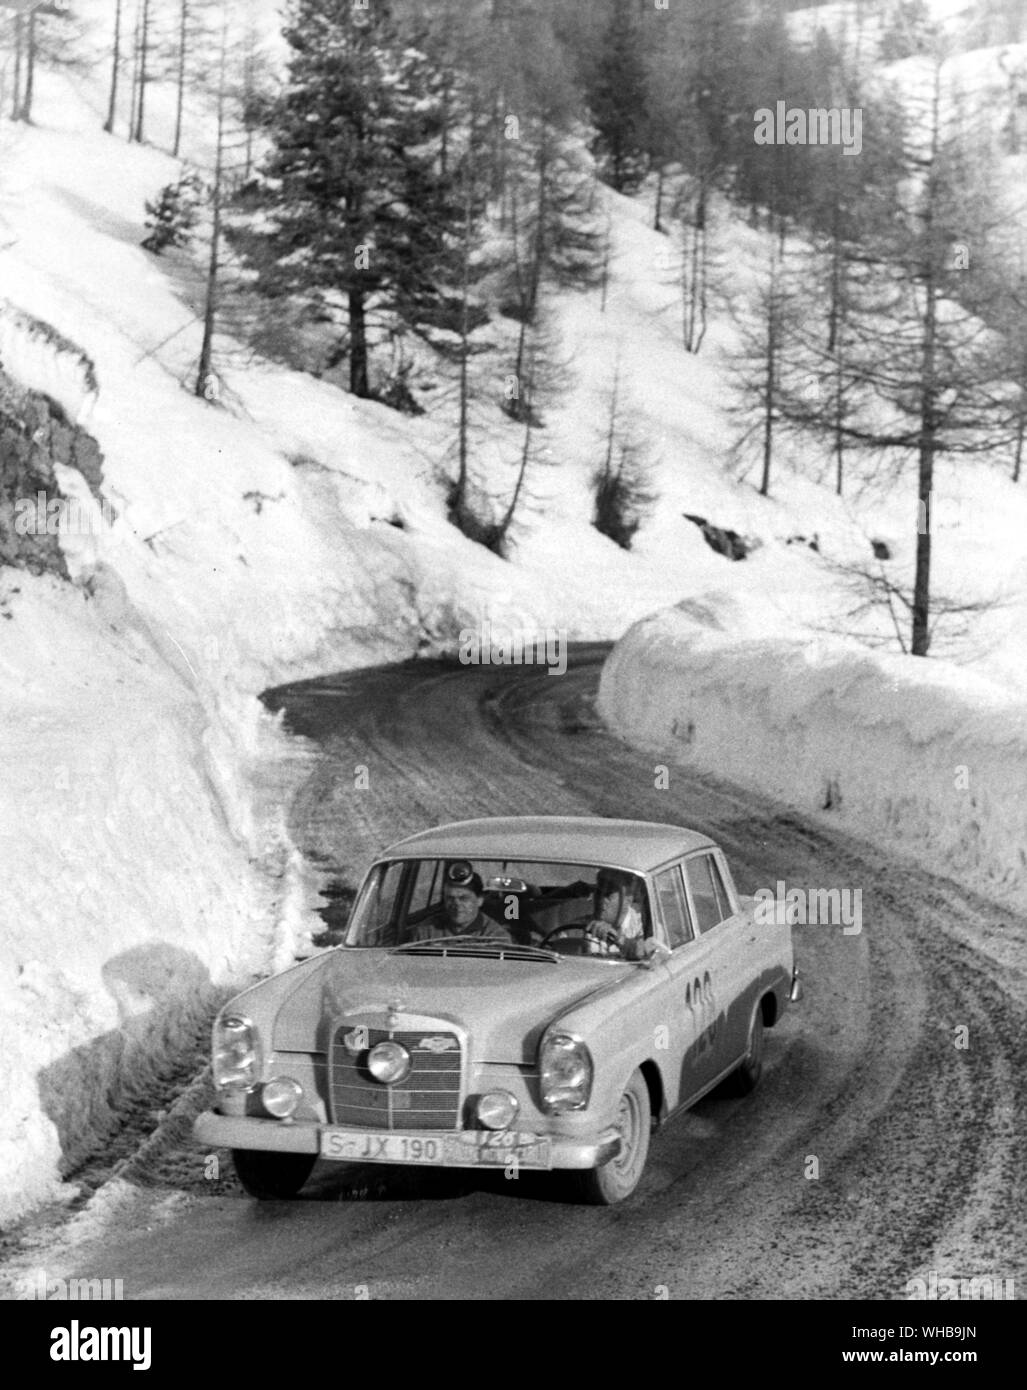 Le 29e Rallye de Monte Carlo a remporté par une Mercedes 128 conduite par paire allemand Walter Schock , et Rolf Moll , vu ici au cours de la difficile épreuve de conduite en montagne , la phase finale du rallye. 24 Janvier 1960 Banque D'Images